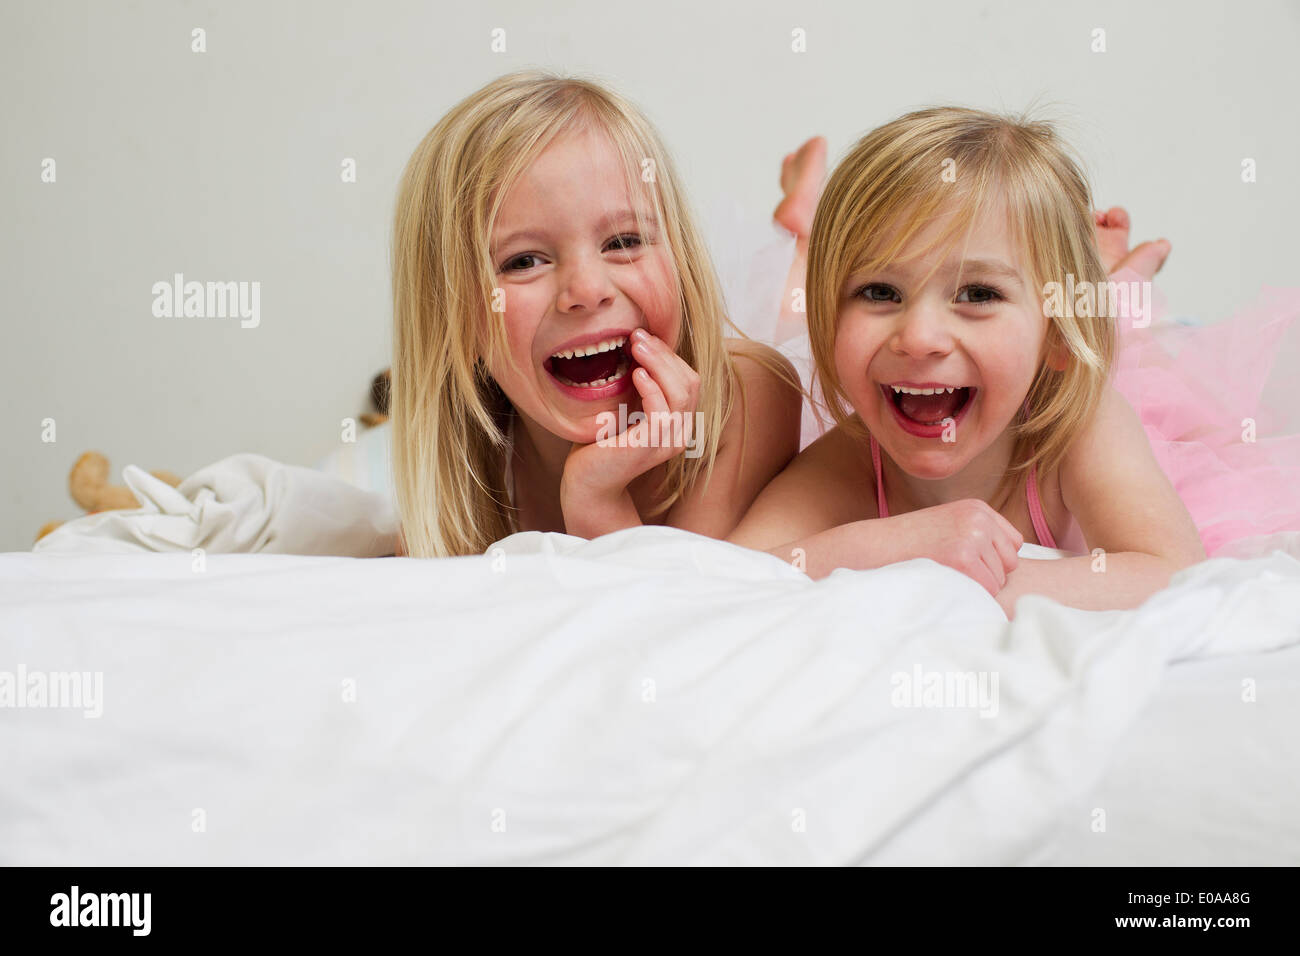 Porträt von zwei jungen Schwestern auf Vorderseite im Bett liegend Stockfoto